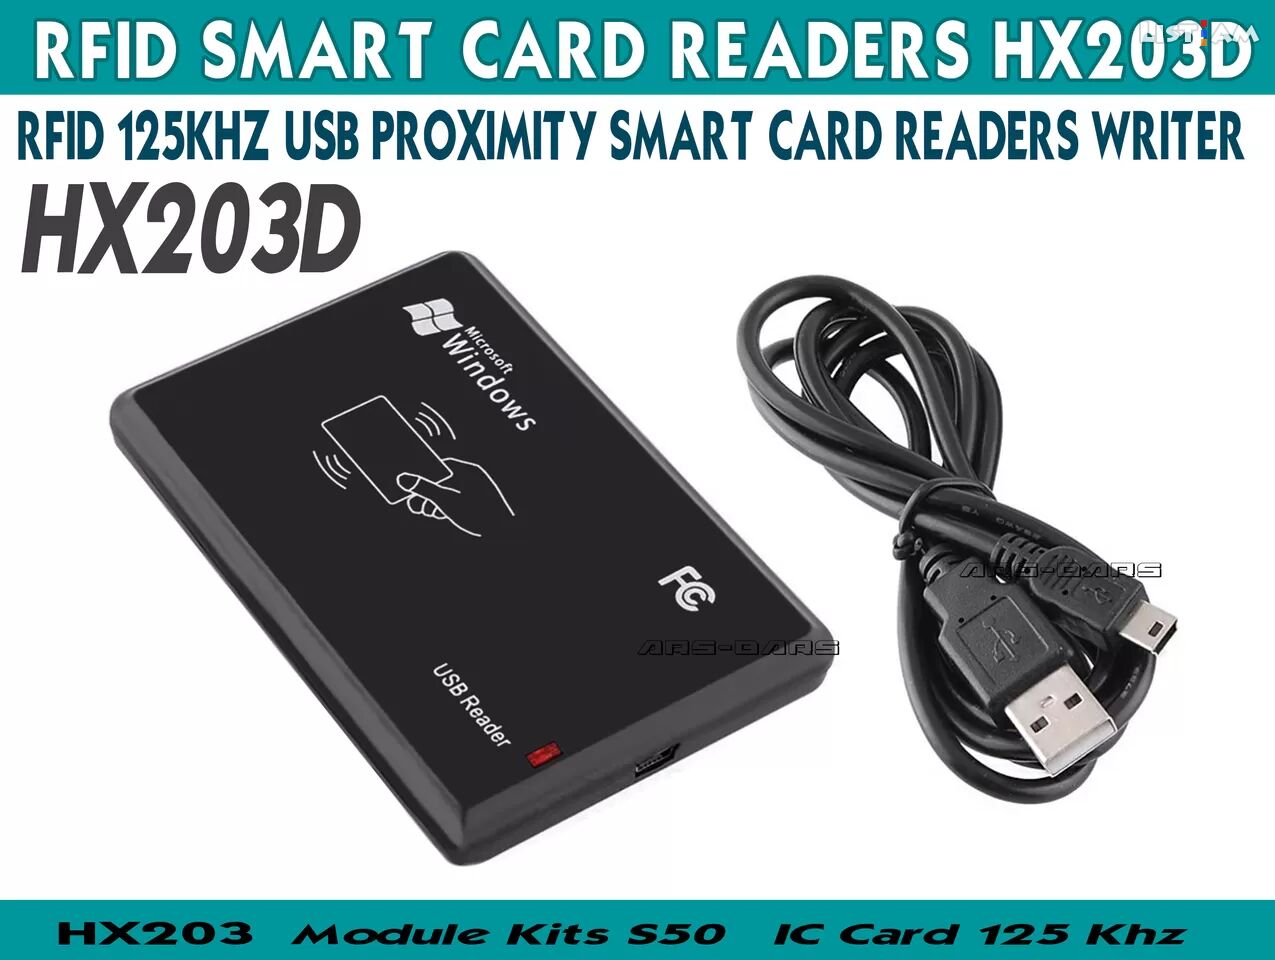 HX203D RFID 125Khz